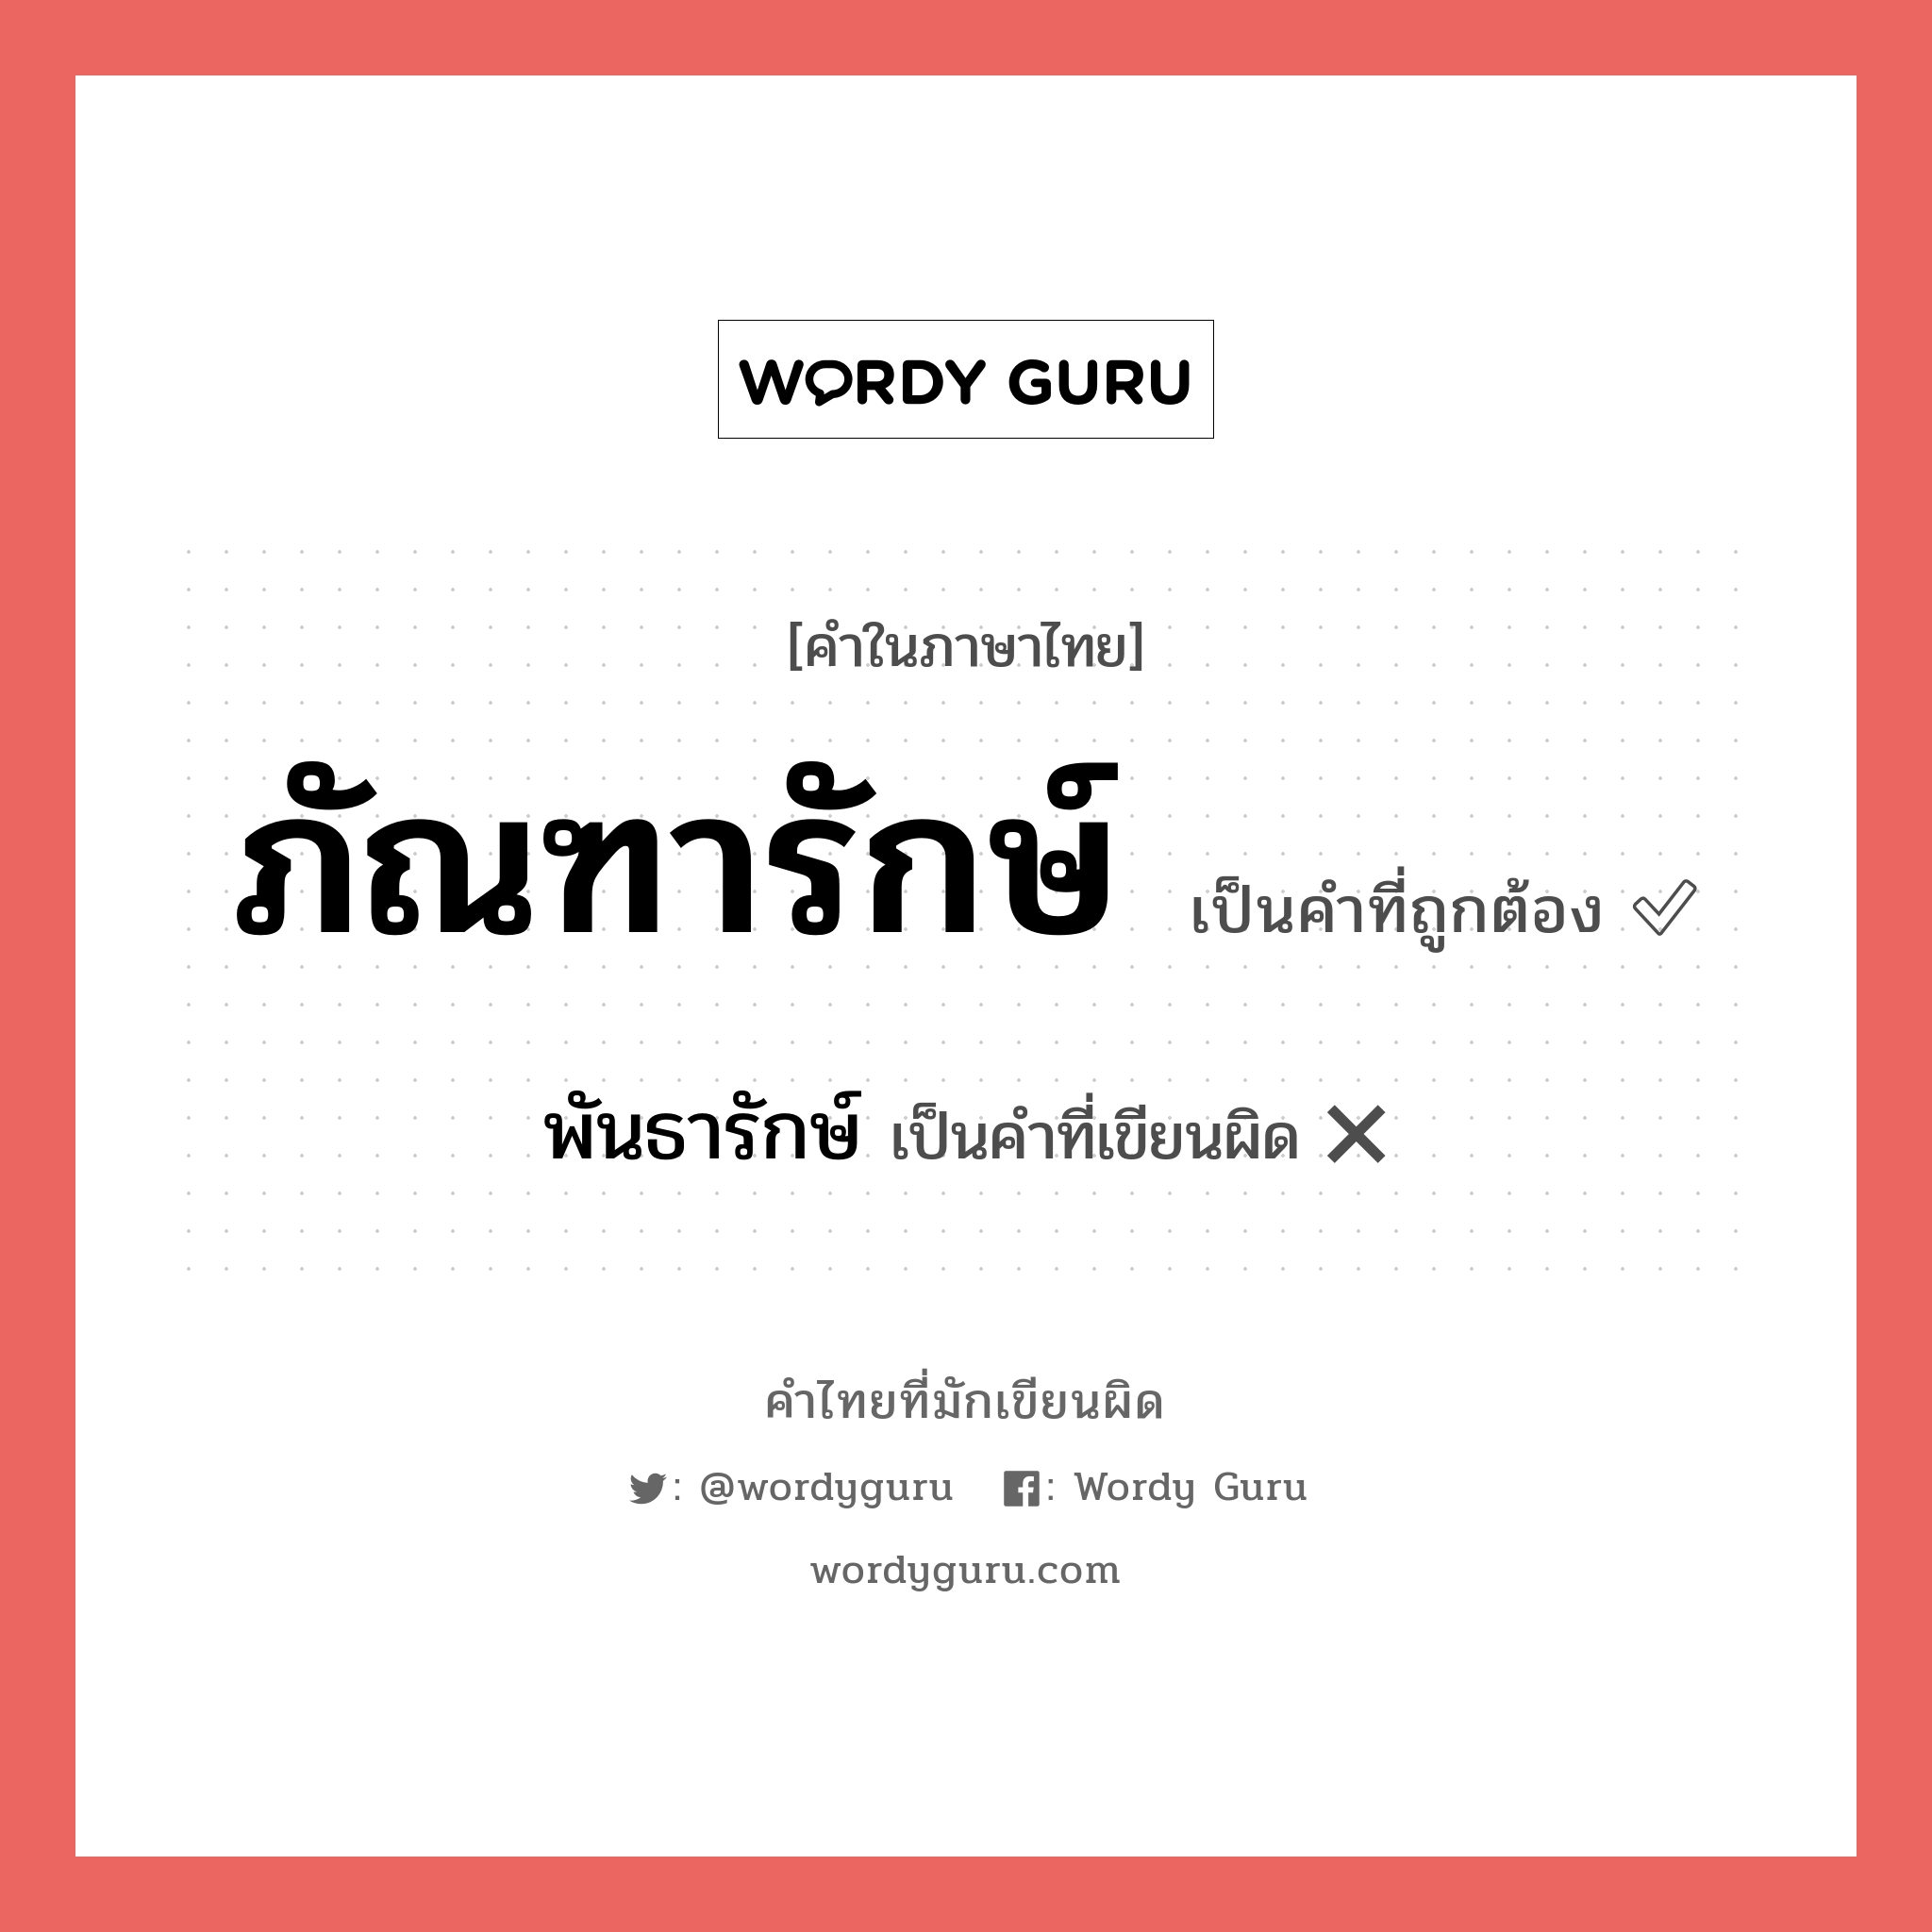 ภัณฑารักษ์ หรือ พันธารักษ์ คำไหนเขียนถูก?, คำในภาษาไทยที่มักเขียนผิด ภัณฑารักษ์ คำที่ผิด ❌ พันธารักษ์